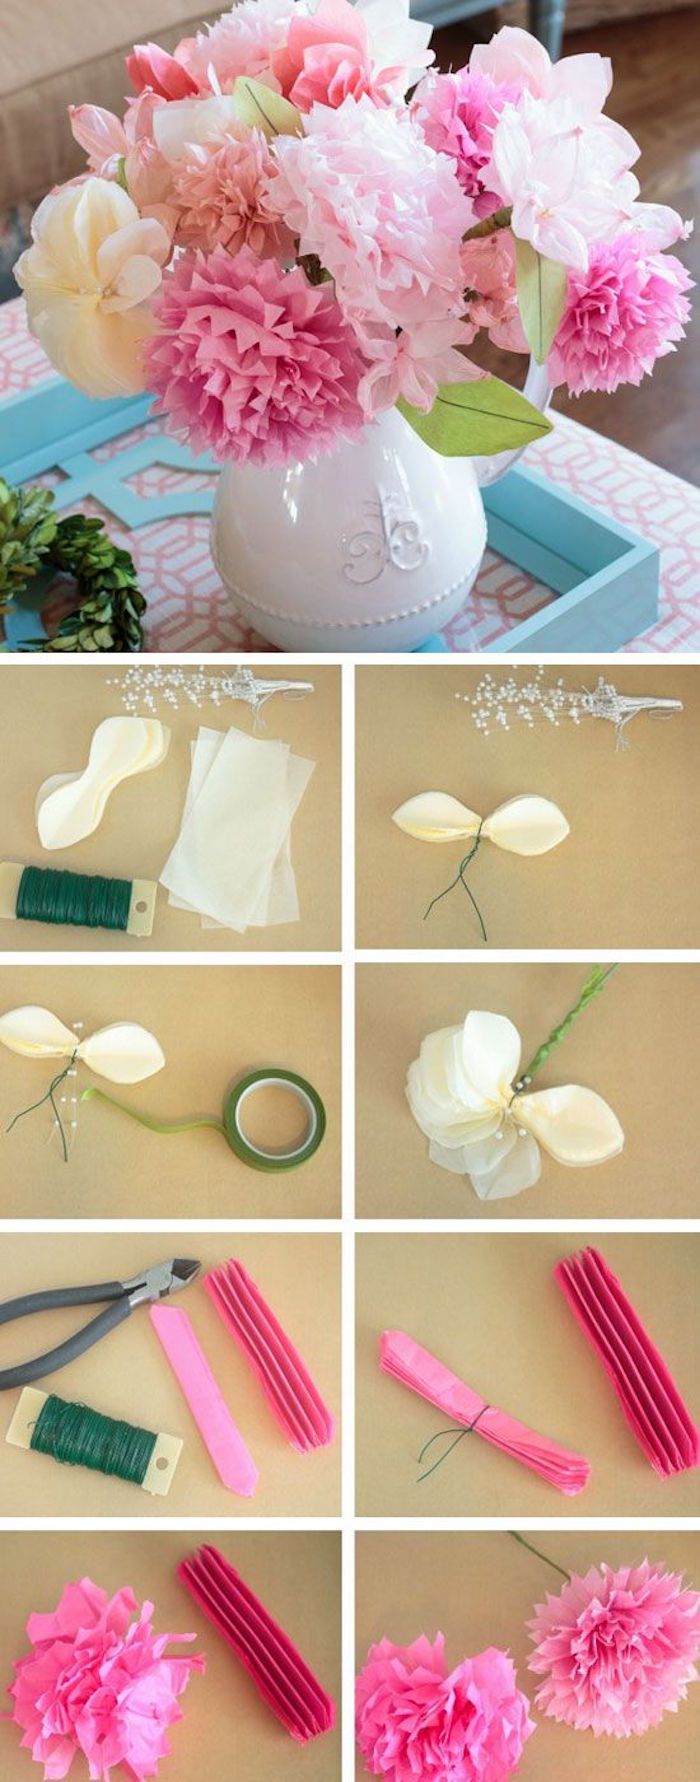 Ustvarjalna ideja, naredi cvetje iz krep papirja, nikoli ne ožemite